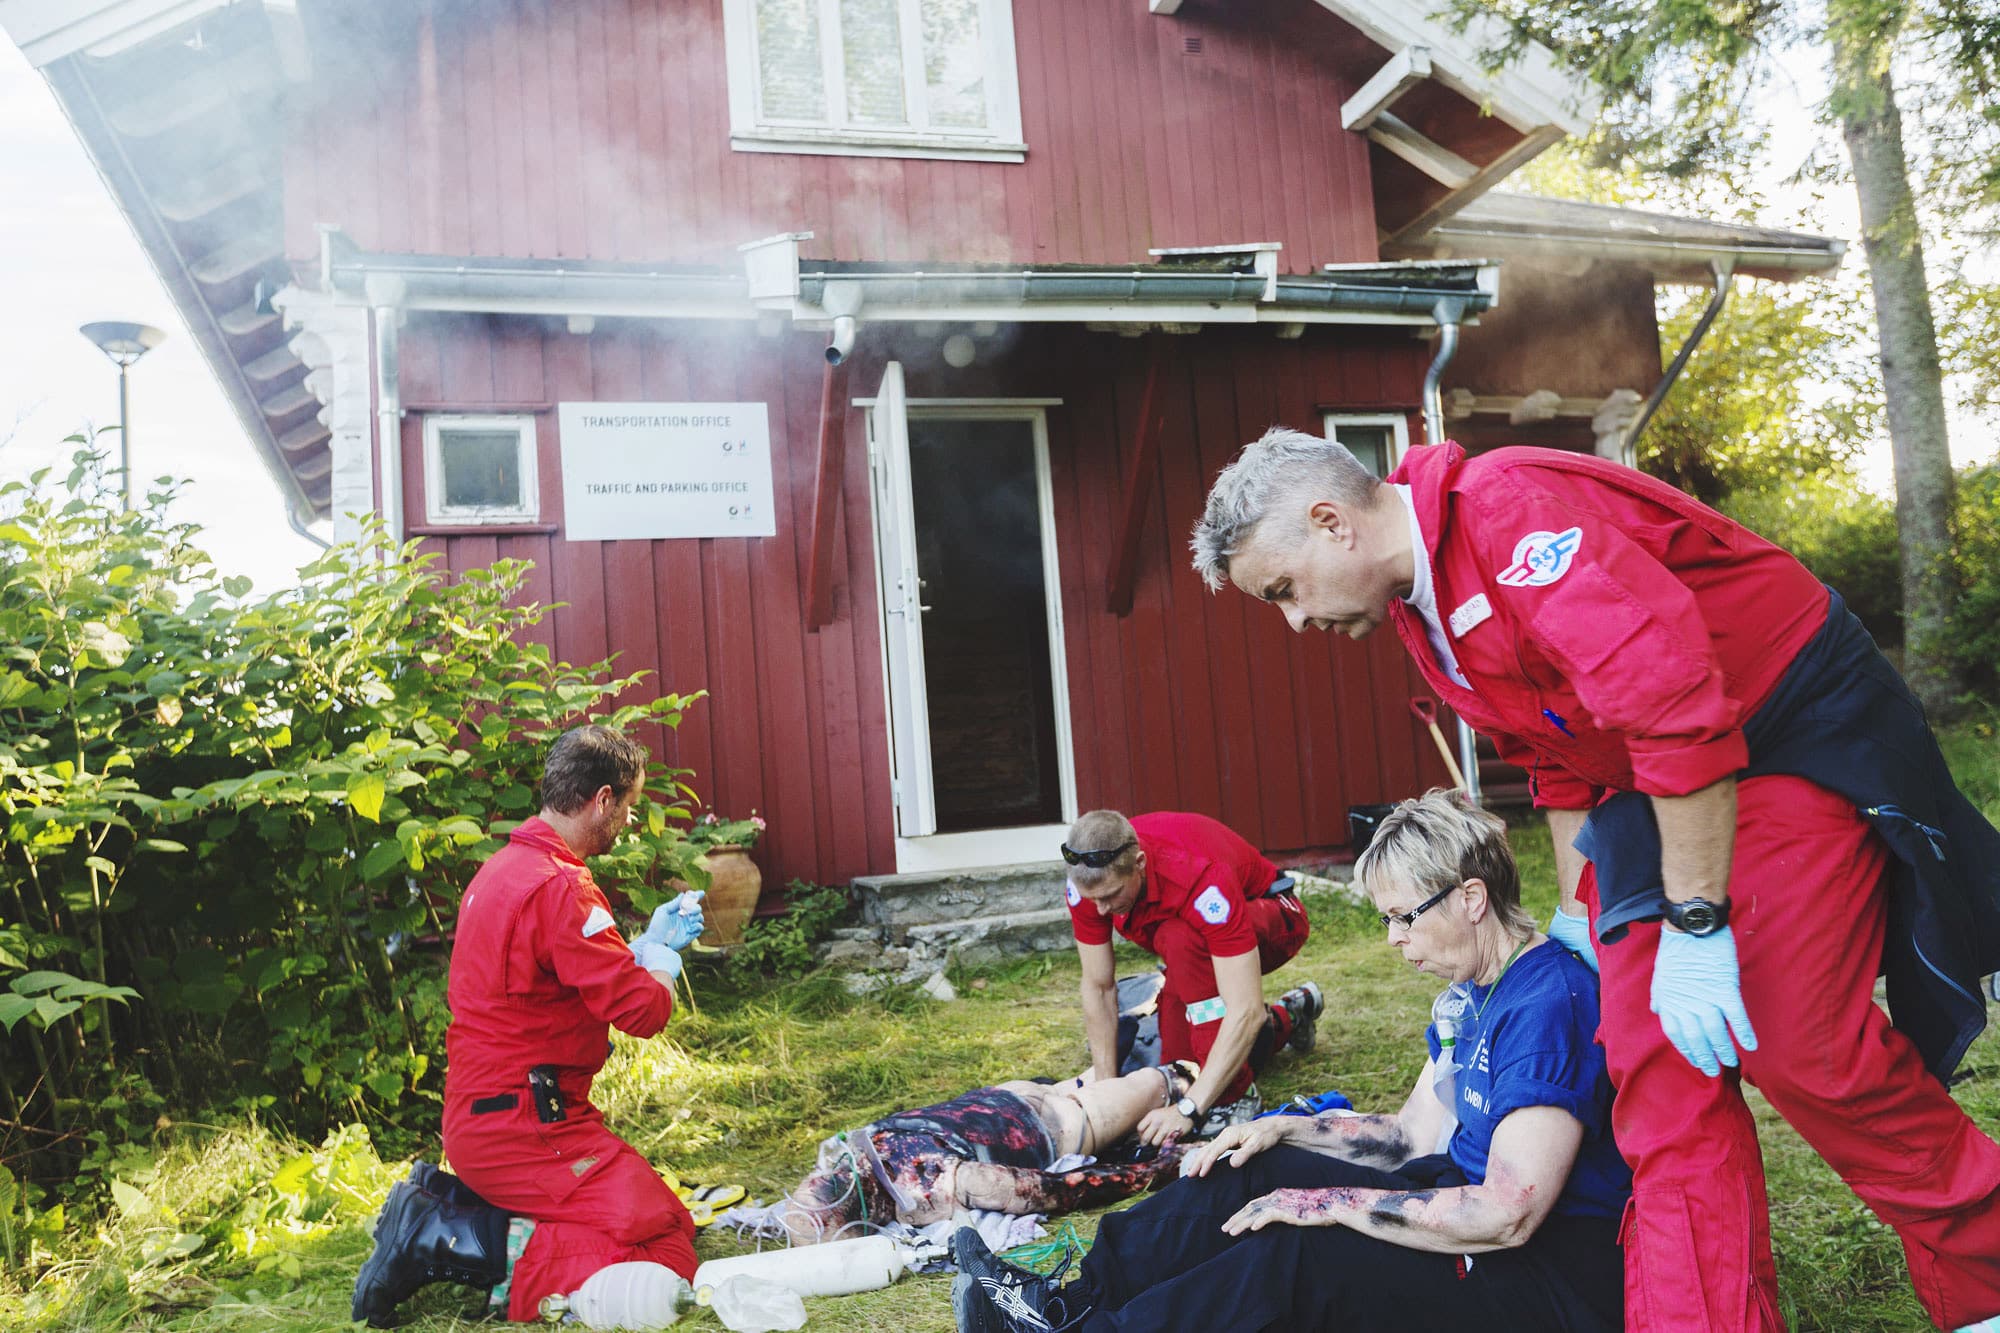 Lege og redningsmann hjelper svært brannskadet pasient under øvelse, mens pilot tar seg av mildere brannskade på en annen. I bakgrunnen et rødt hus det velter røyk ut av.